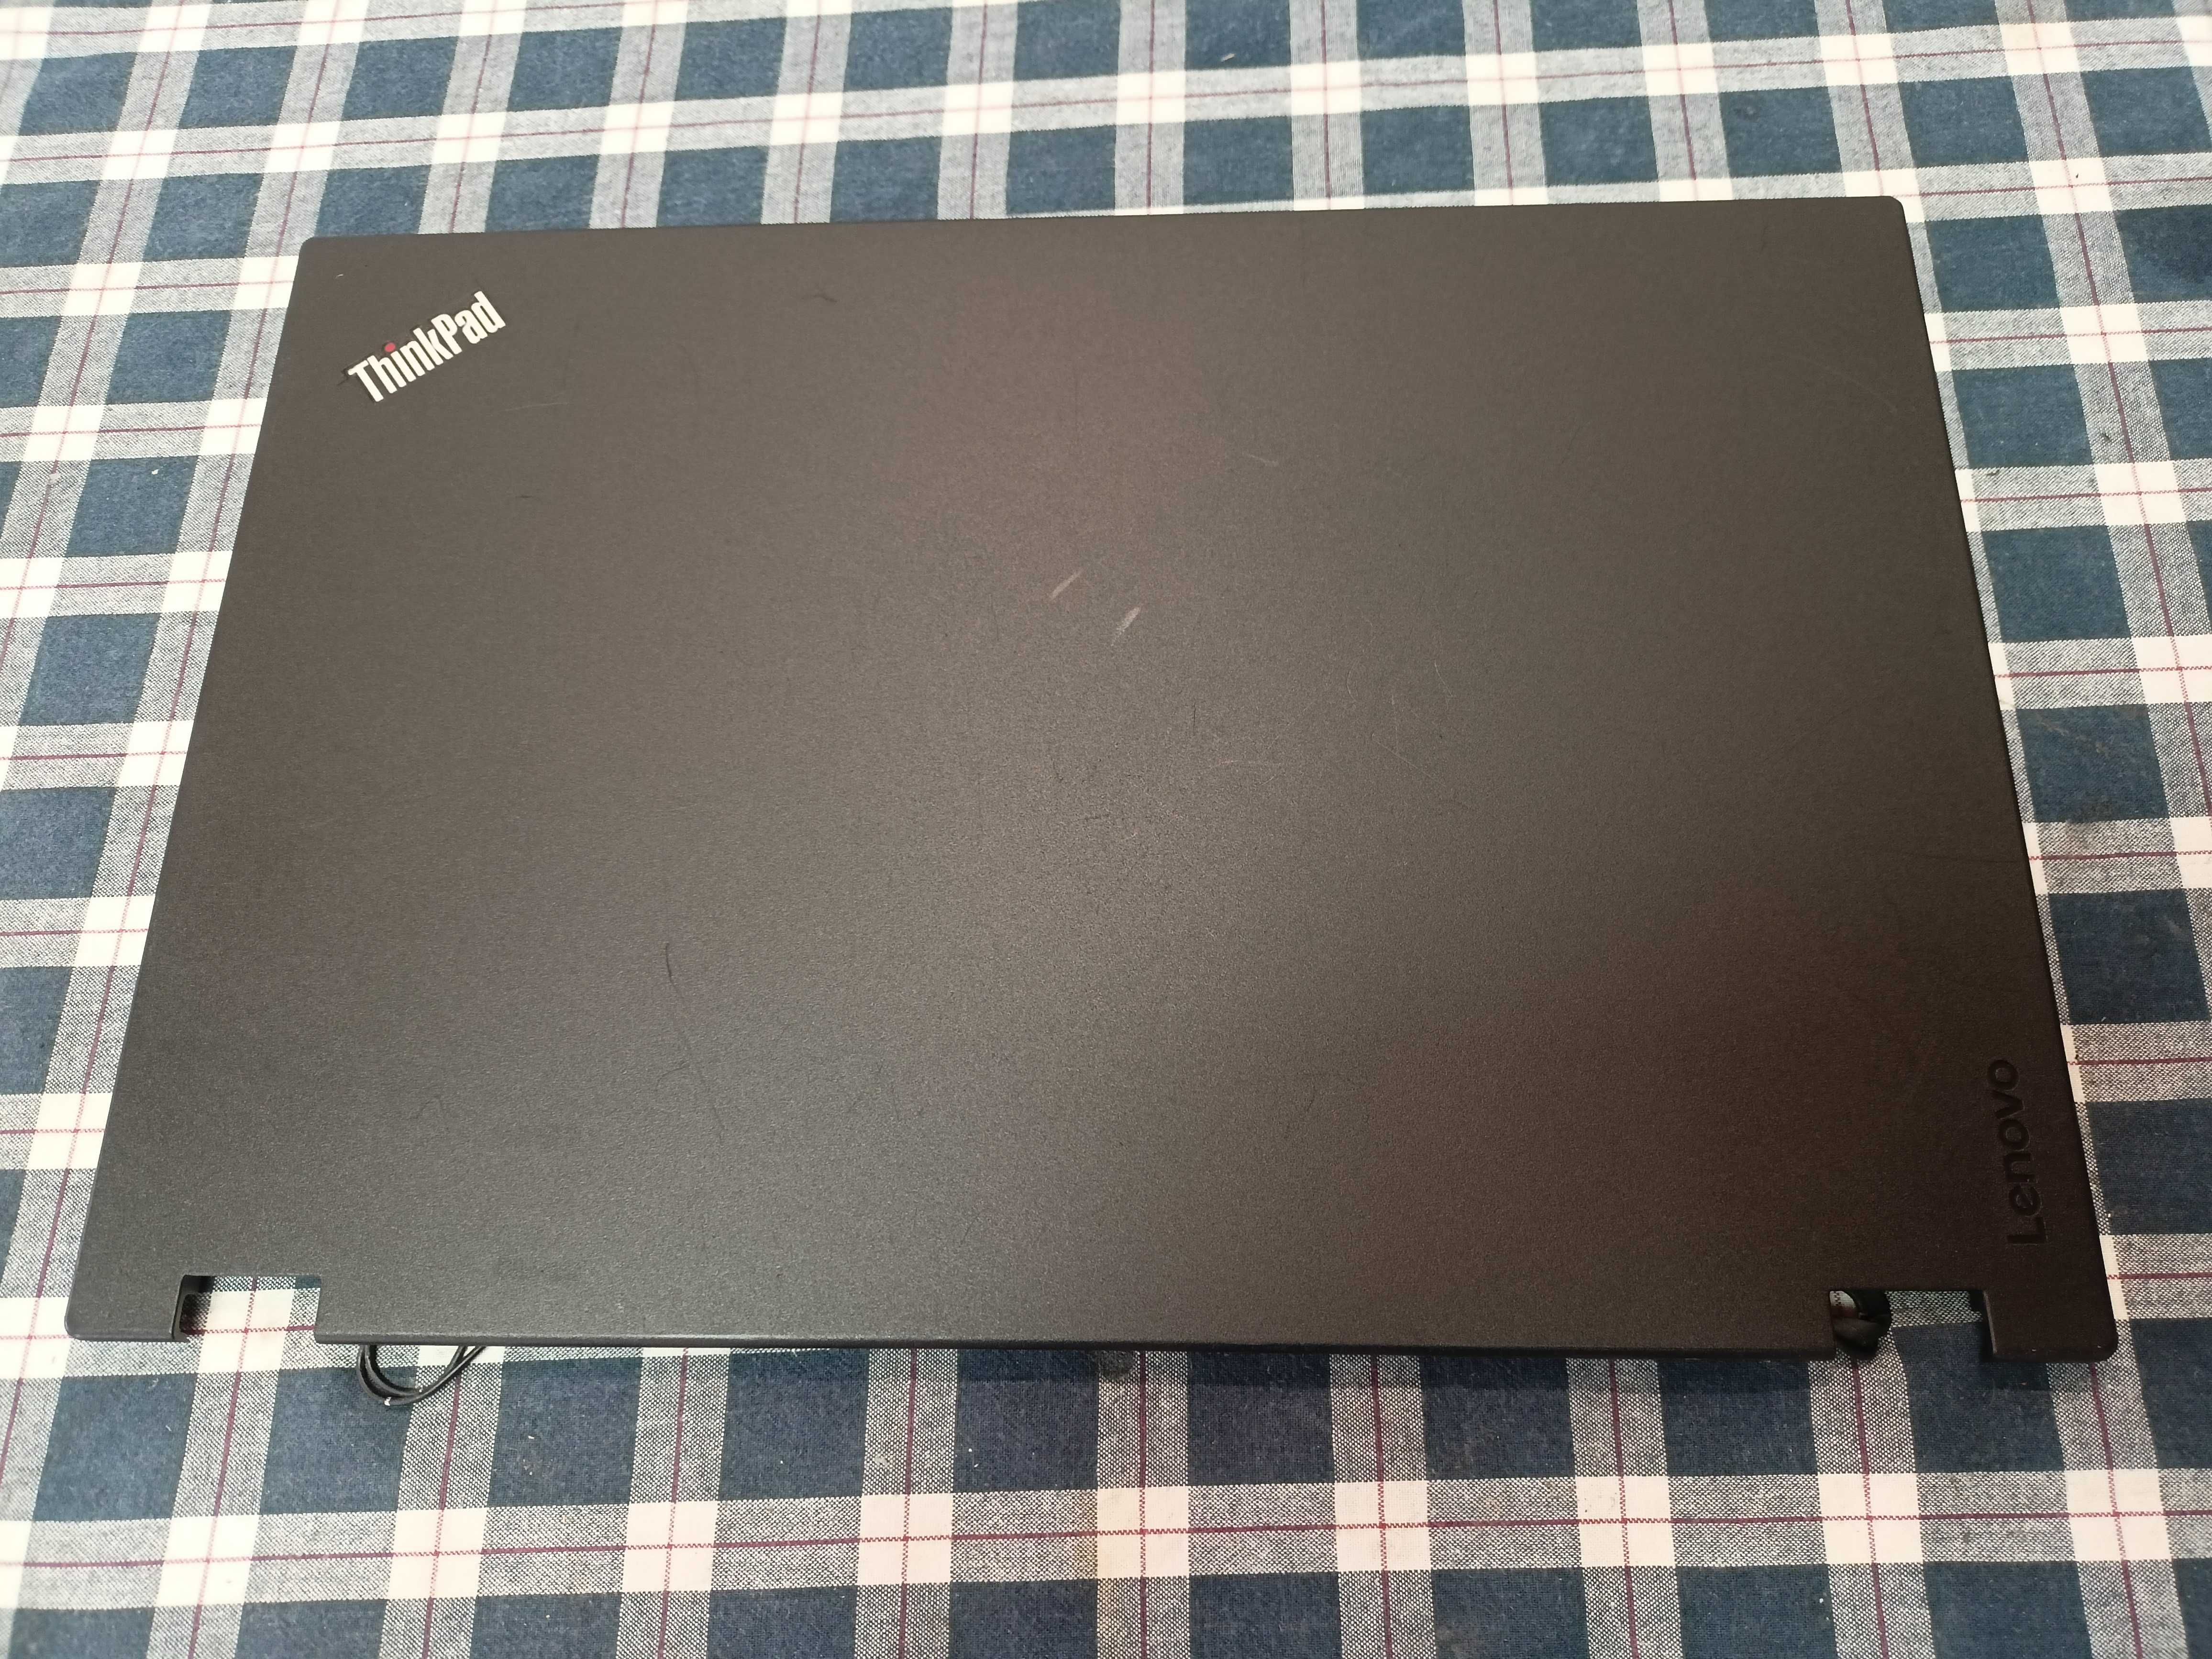 Dezmembrez Lenovo ThinkPad L560 - PretMic